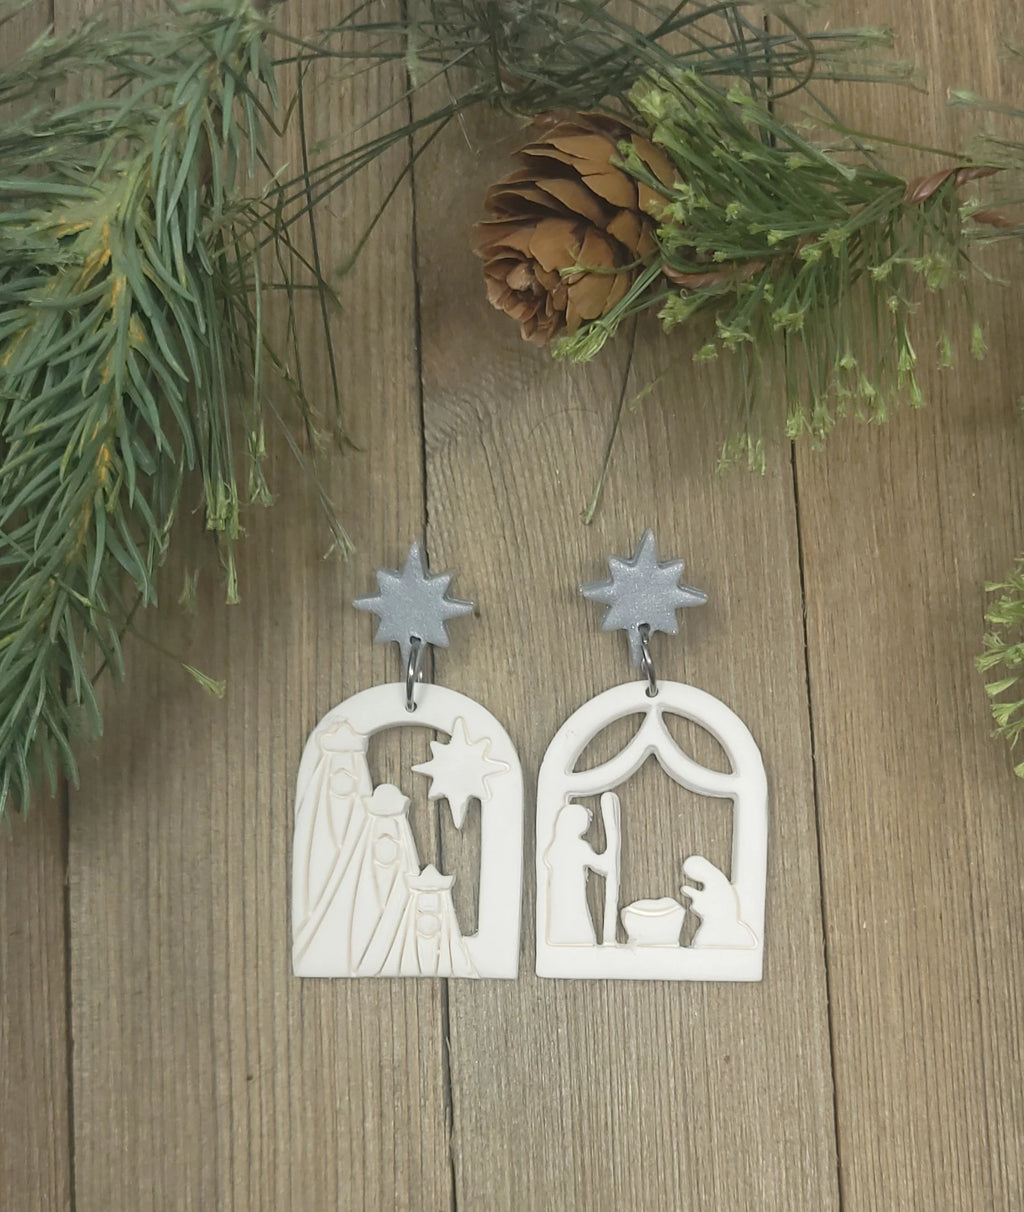 Nativity Scene earrings/ three wisemen Christmas earrings